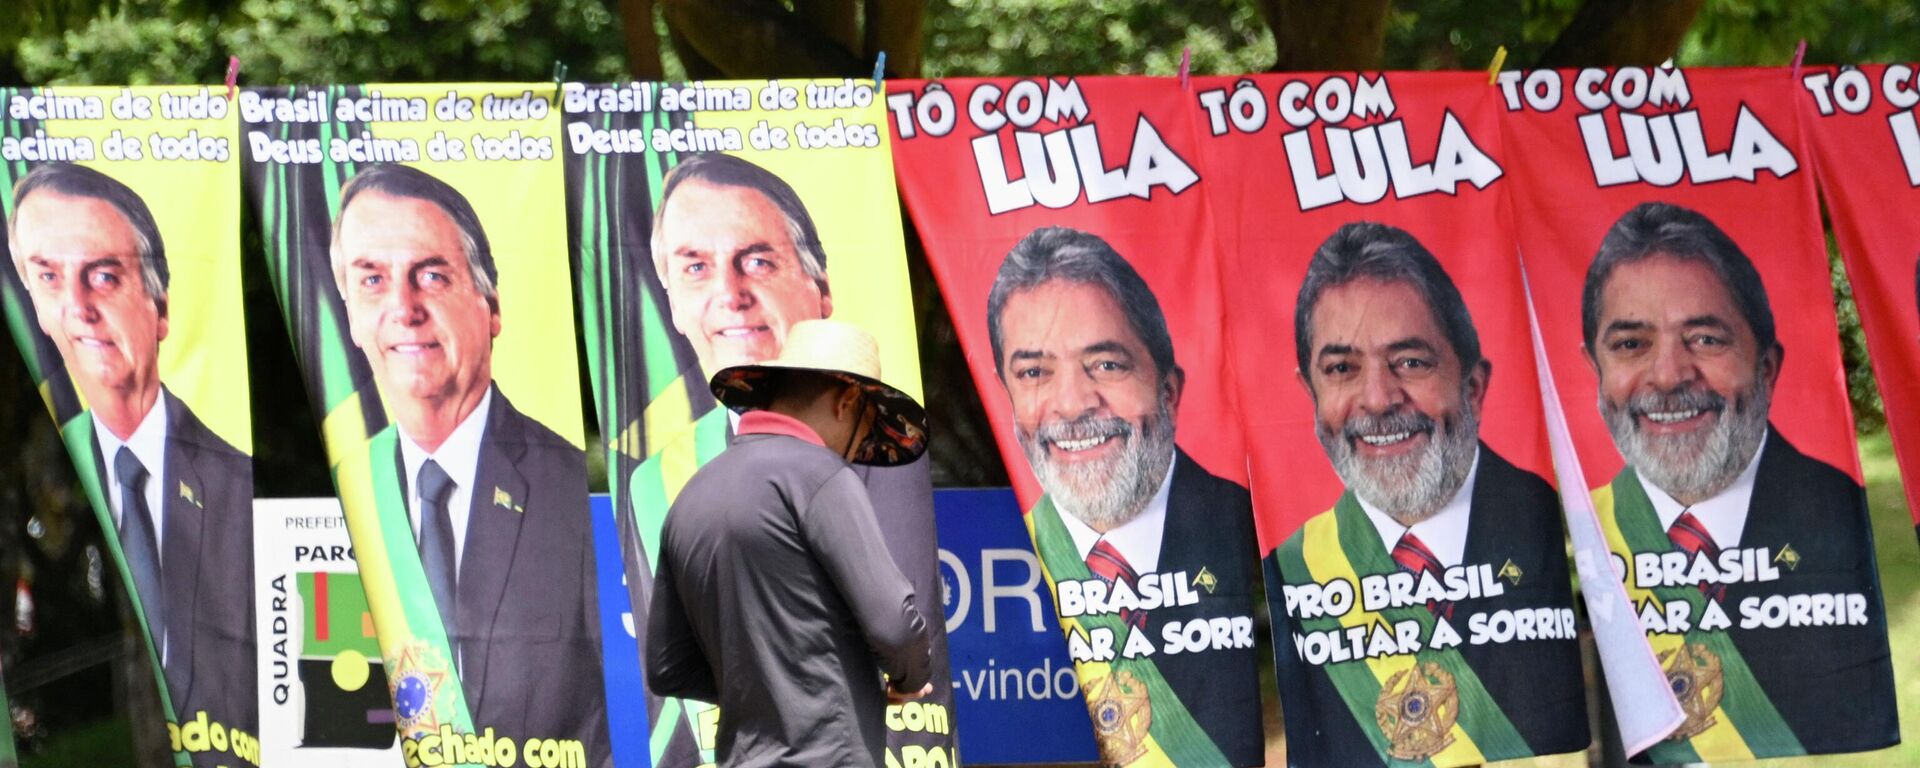 Banderas con las imágenes de Jair Bolsonaro y Luiz Inacio Lula da Silva, candidatos a la presidencia de Brasil - Sputnik Mundo, 1920, 27.09.2022